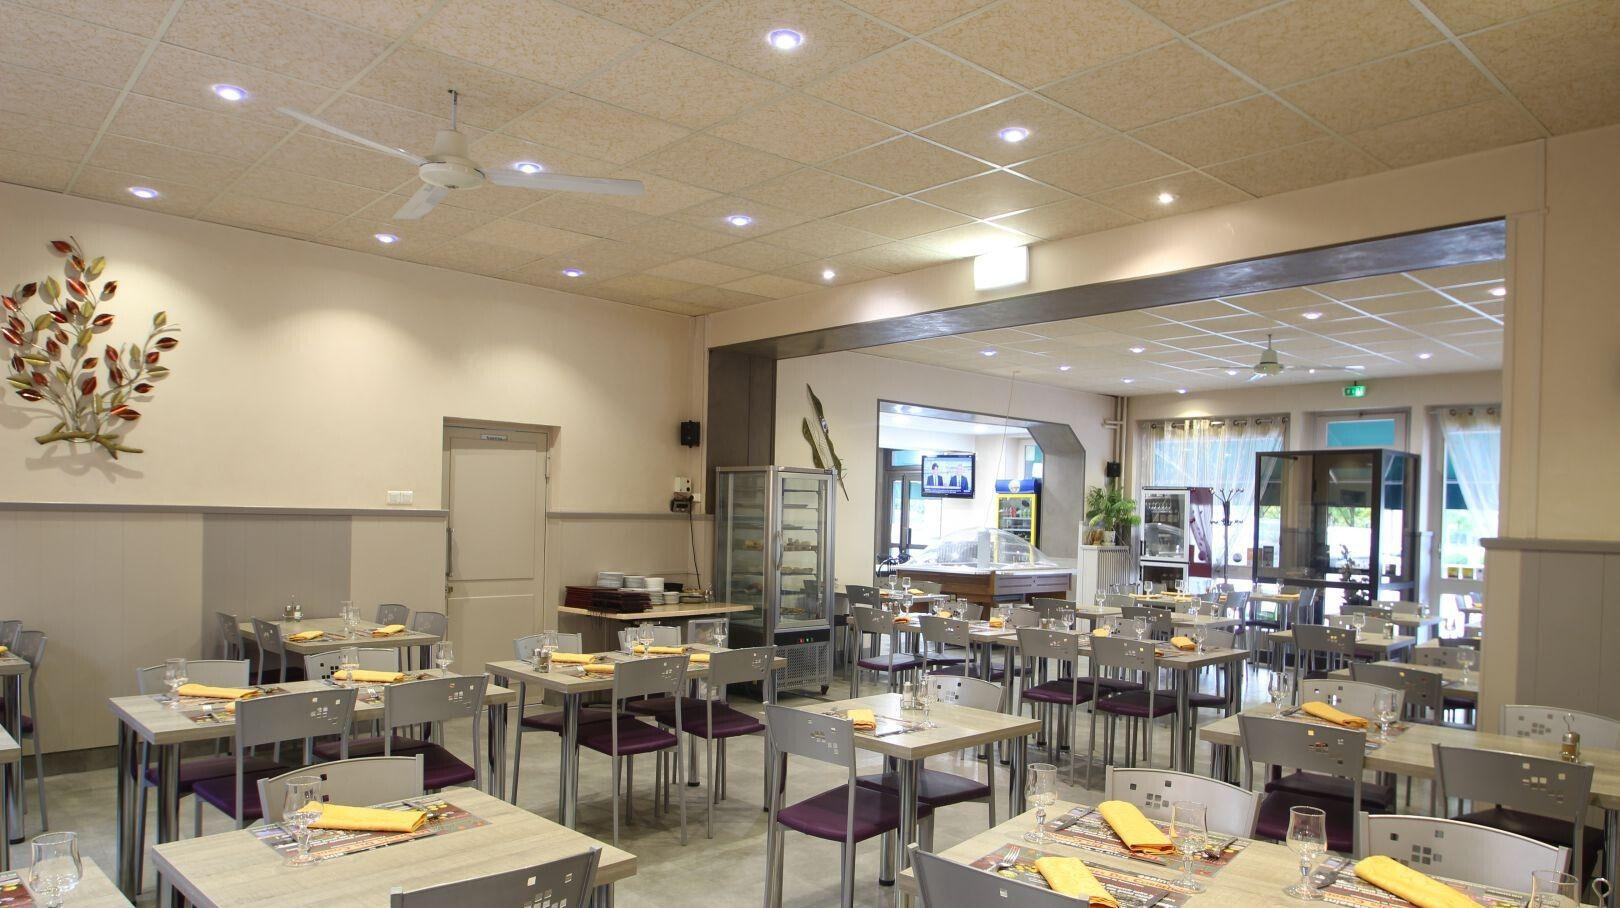 Vente hôtel-restaurant à Paray-le-Monial centre